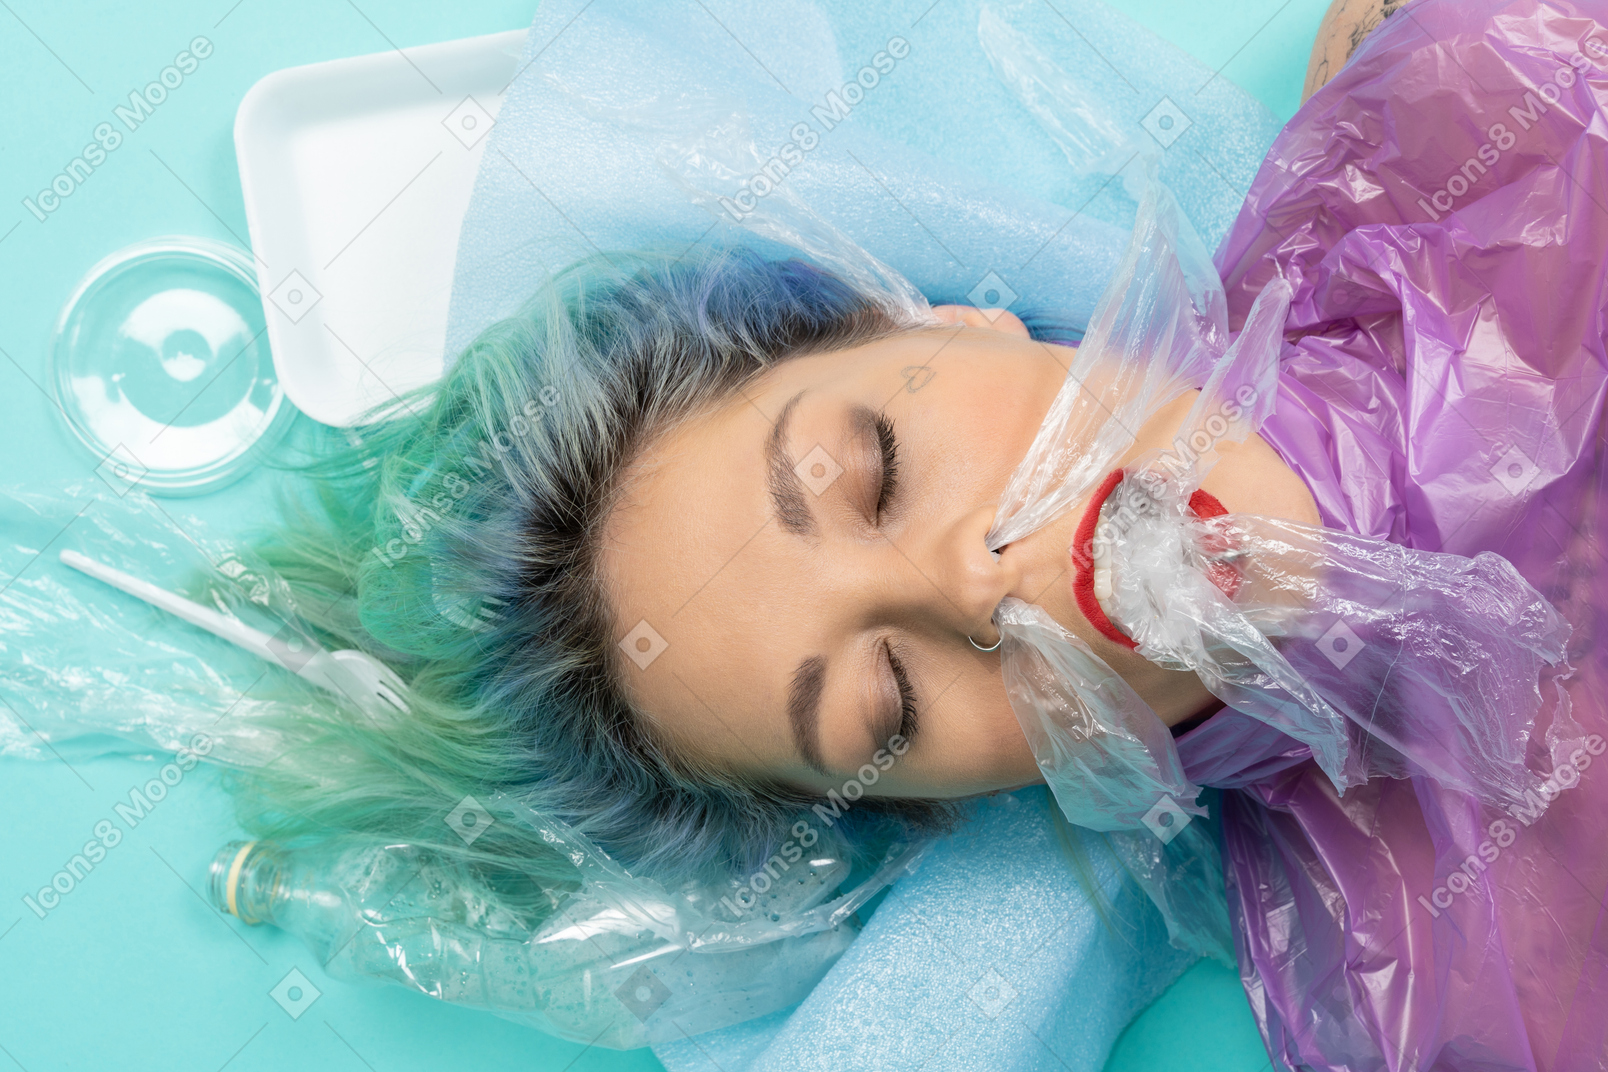 Jovem mulher deitada com os olhos fechados, rodeada de muitas coisas de plástico